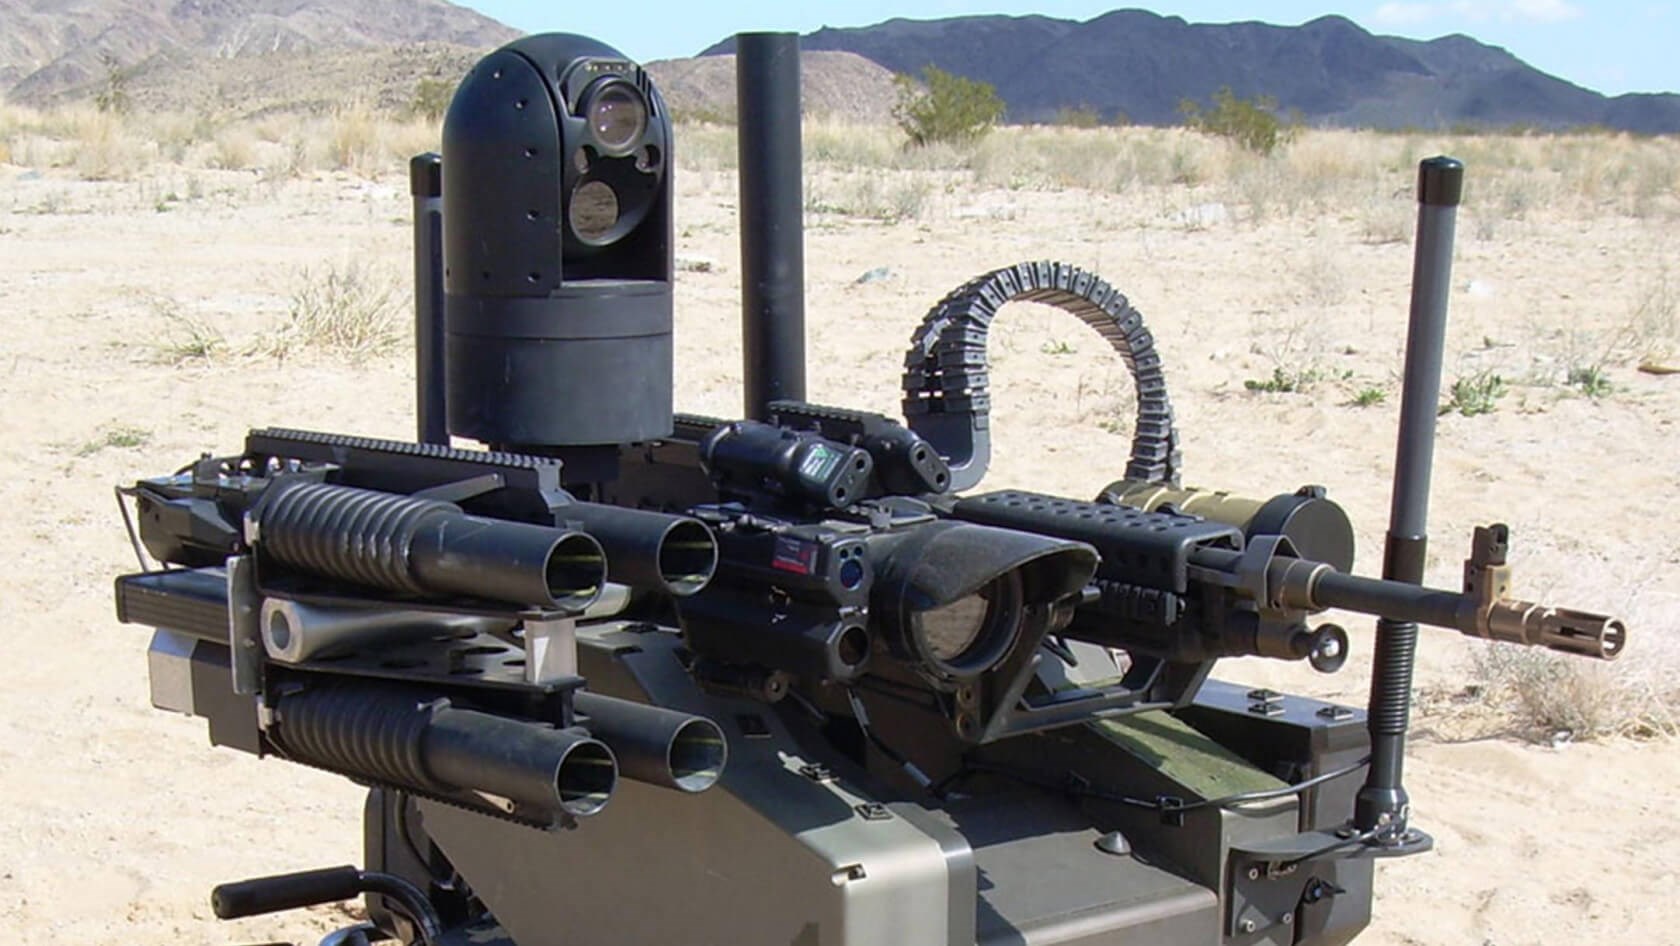 İsrail, askeri amaçlar için yapay zekalı silah sistemleri kullana